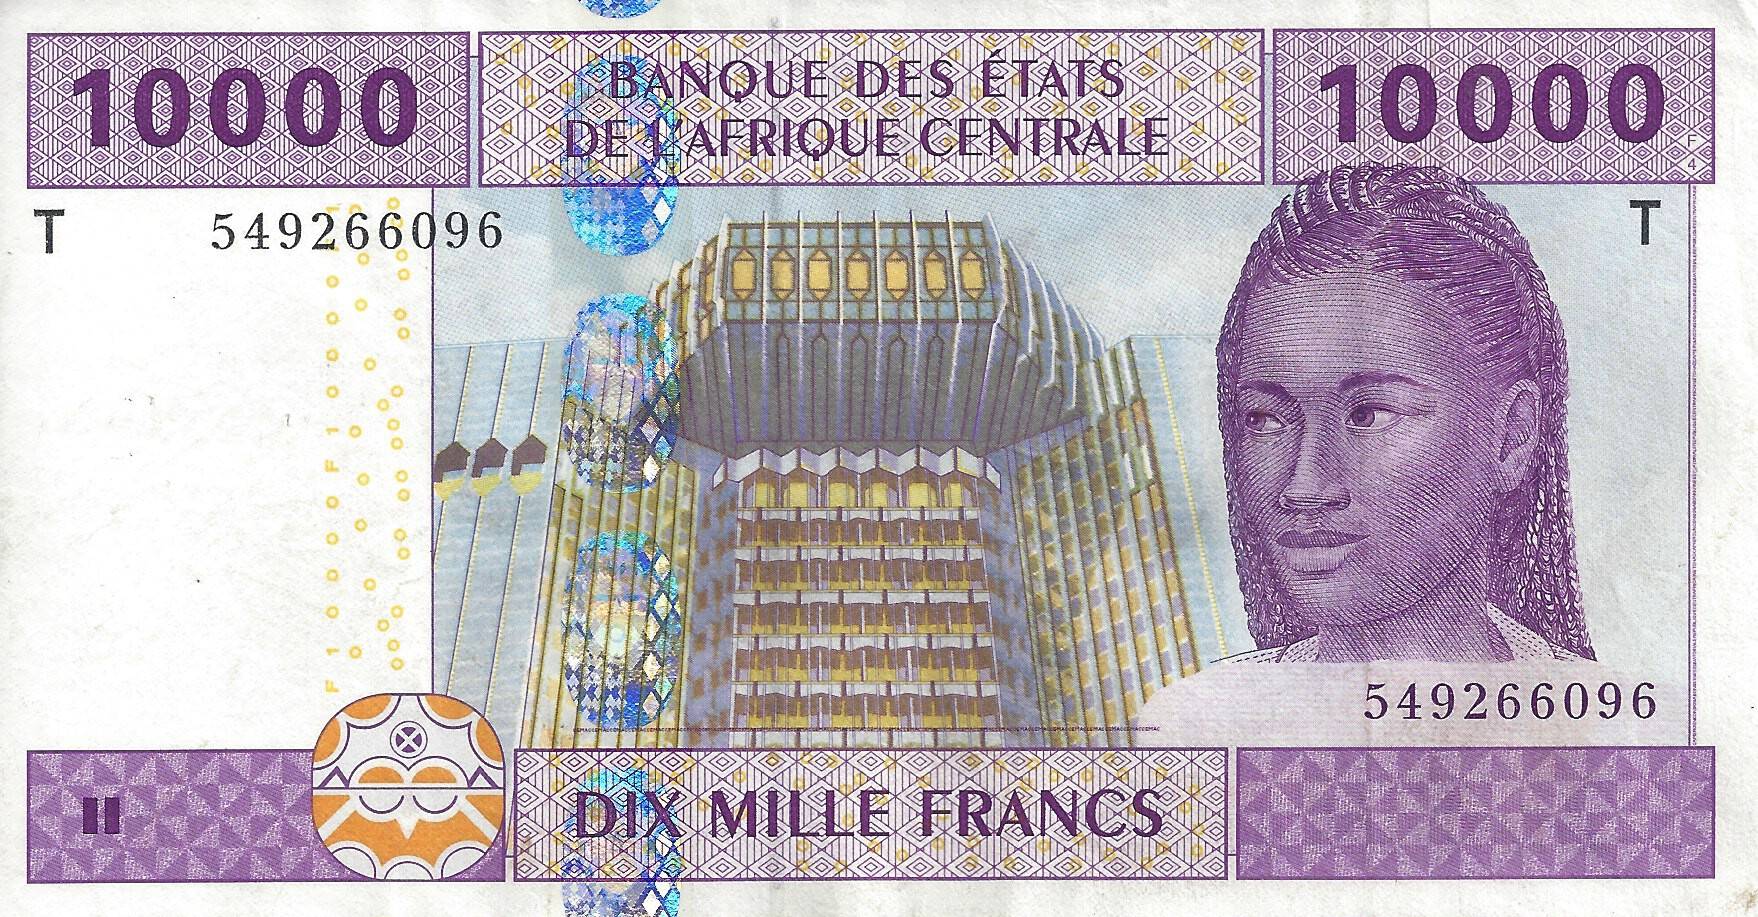 billet de 10000 francs CFA Afrique Centrale (recto)